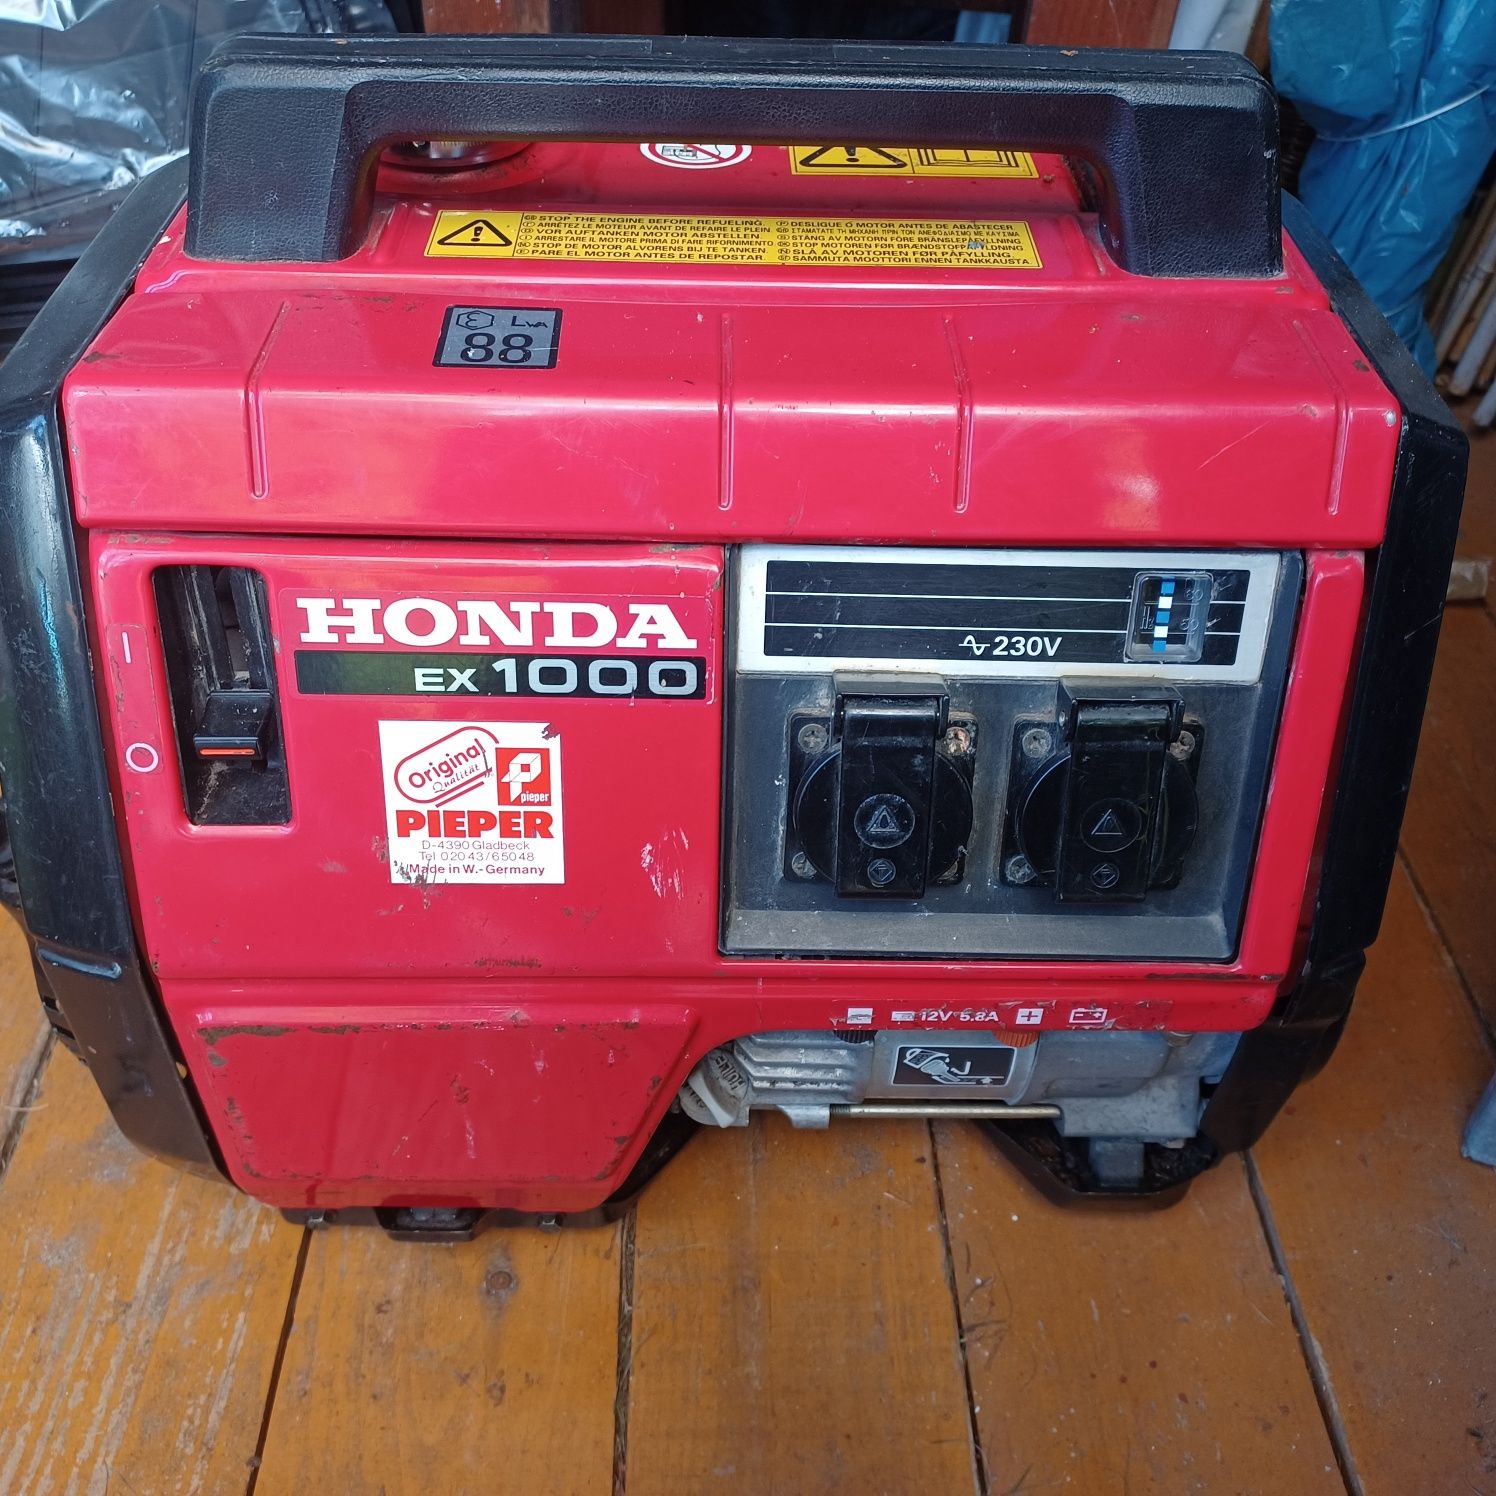 Spalinowy agregat prądotwórczy Honda EX1000W